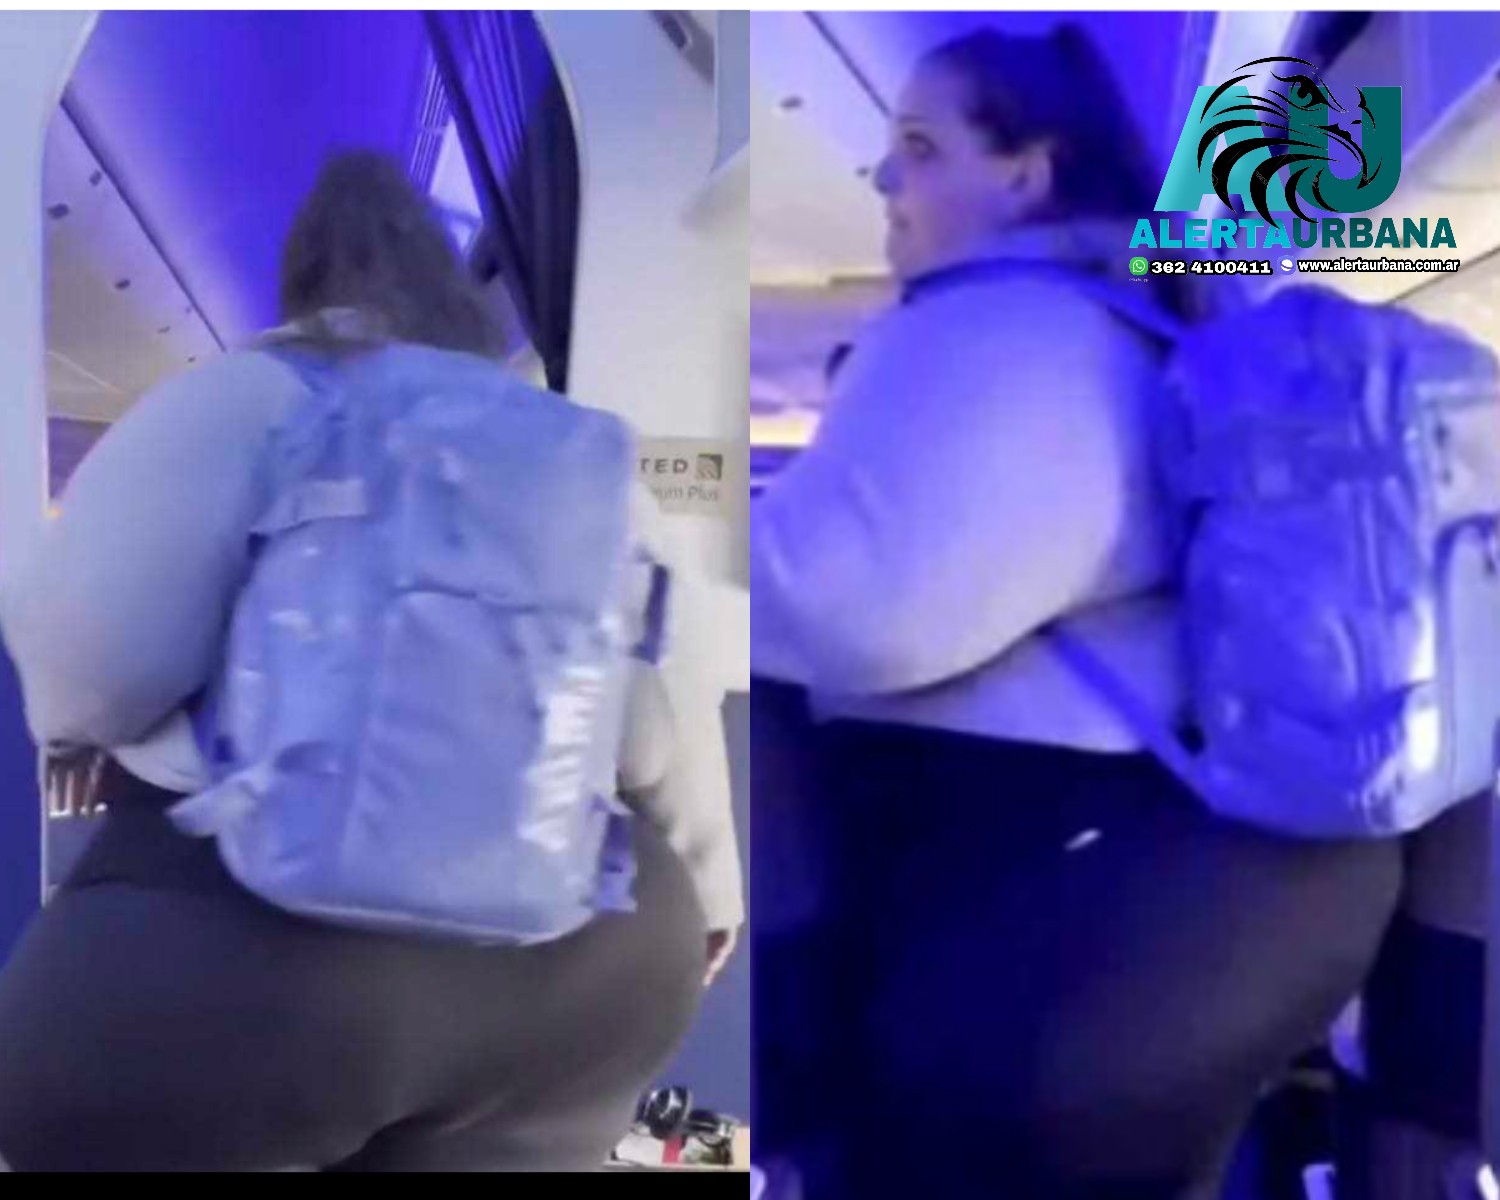 Una mujer que pesa 330 kilos, criticó el estrecho tamaño de aviones tras no caber en pasillo